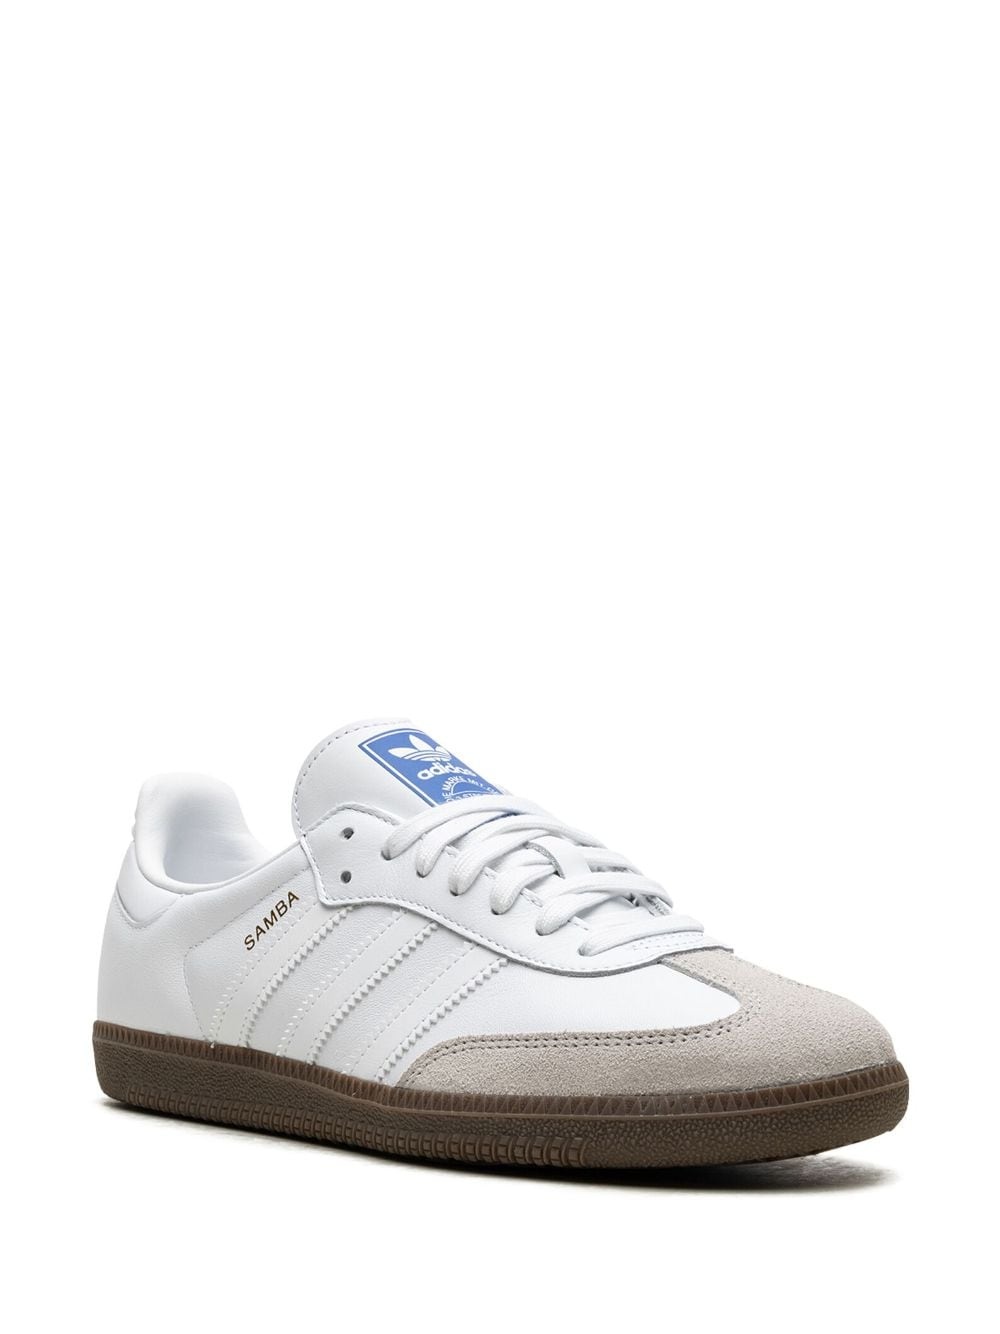 Samba OG "Double White Gum" sneakers - 2